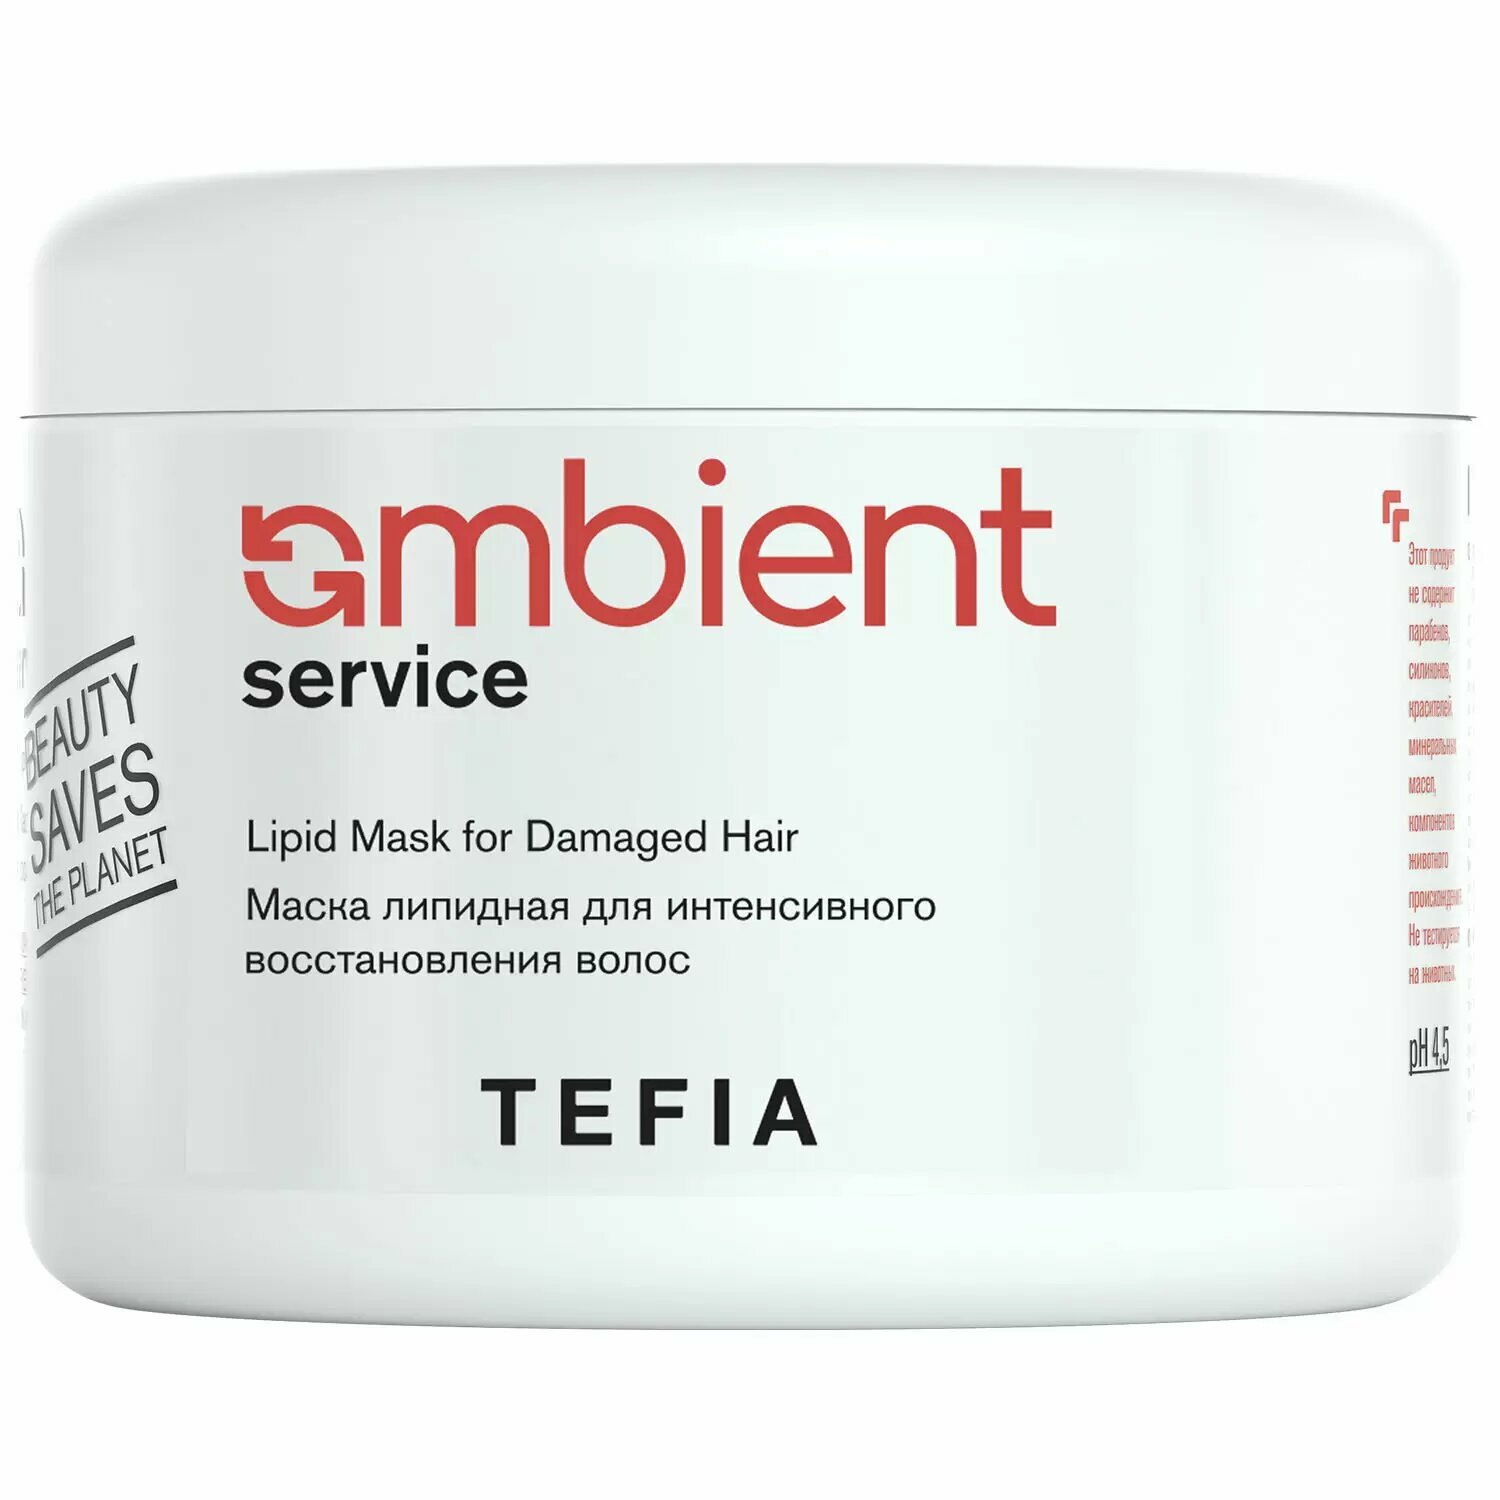 TEFIA Маска липидная для интенсивного восстановления волос Lipid Mask for Damaged Hair, 500 мл